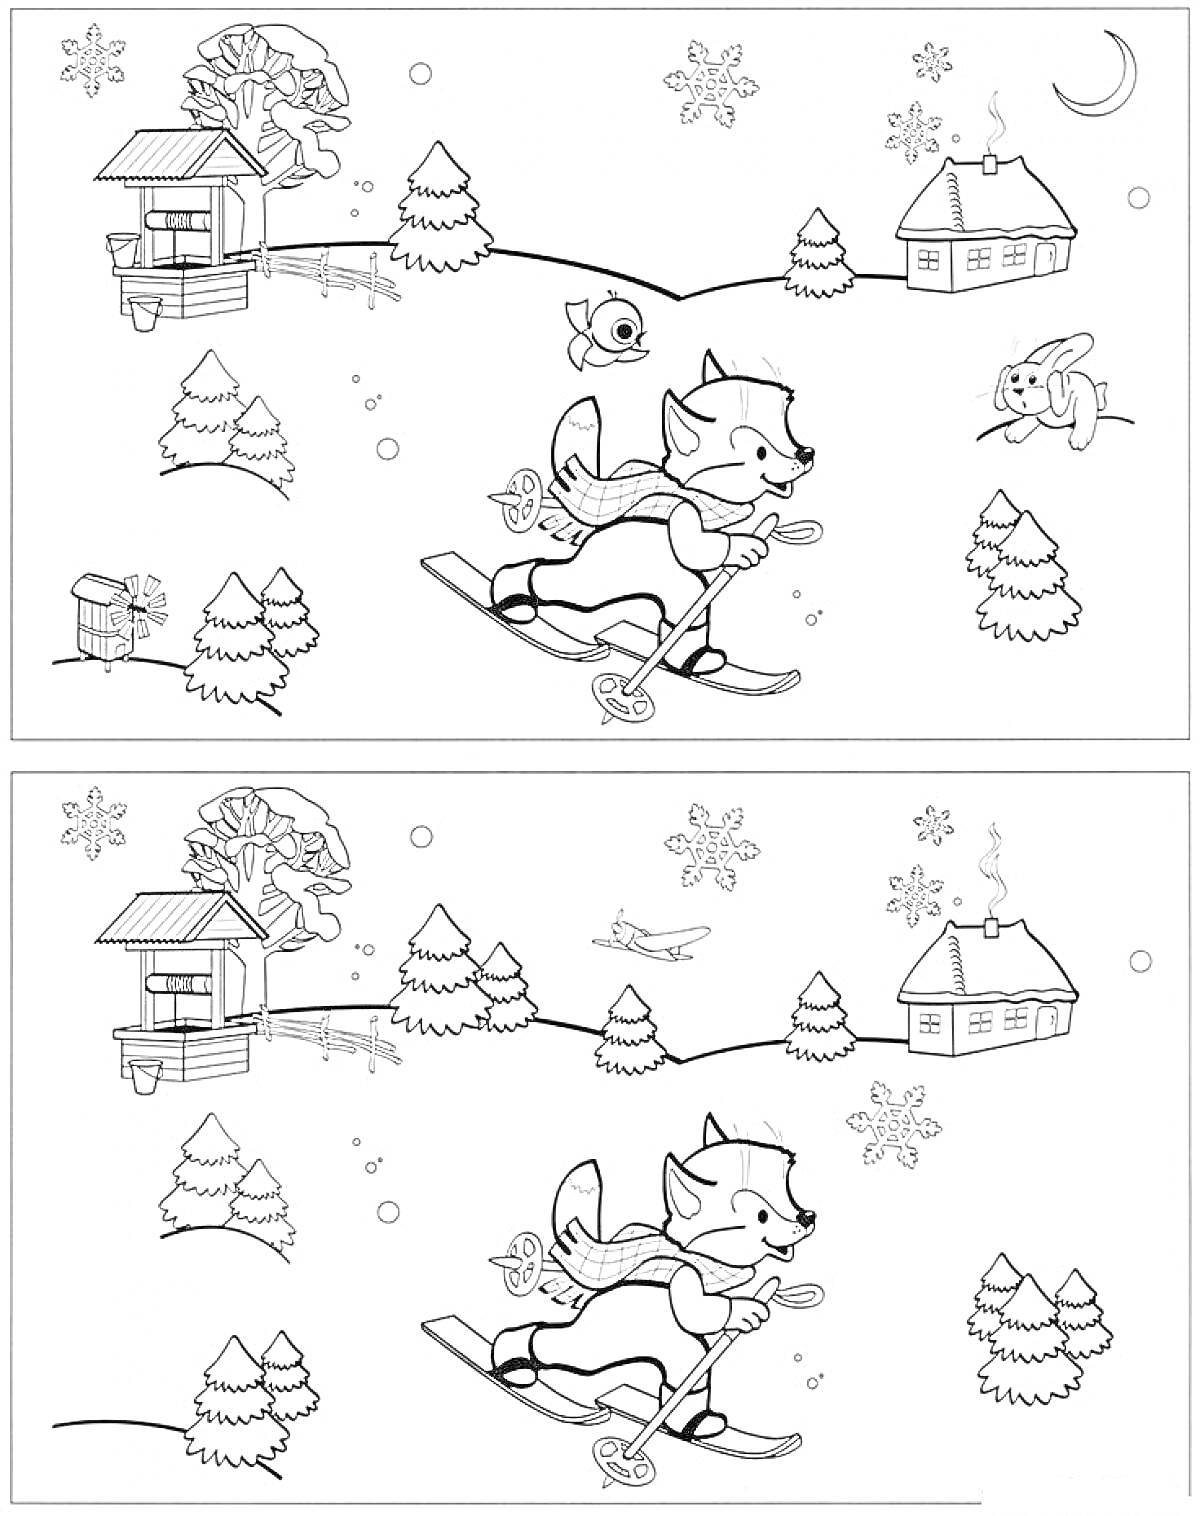 РаскраскаНайди отличия: зимний пейзаж с лисой на лыжах, деревьями, домиком, забором, кроликом, рыбой и снегом